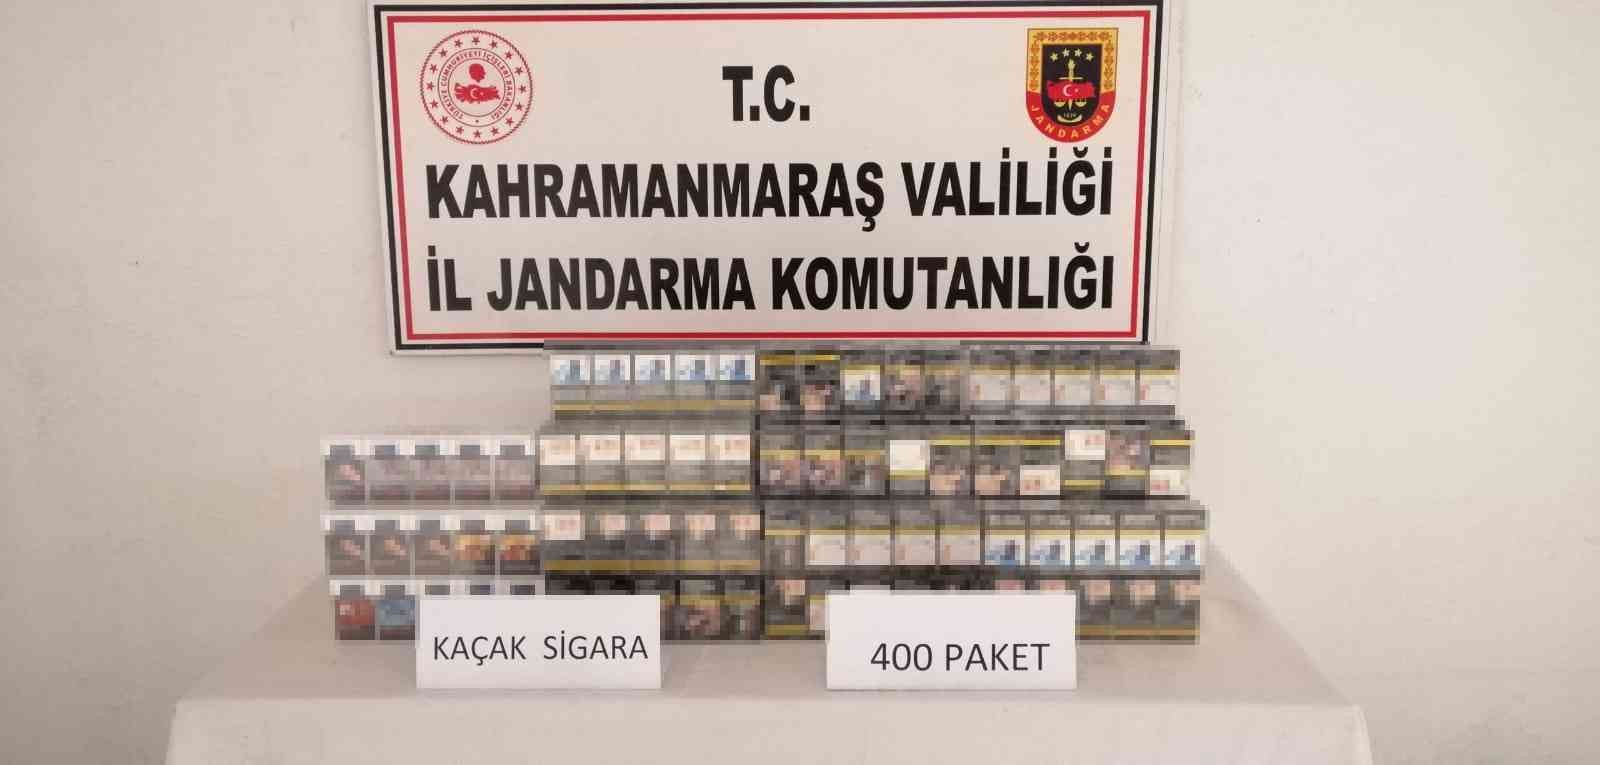 Otobüste 400 paket sahte bandrollü sigara ele geçirildi #kahramanmaras